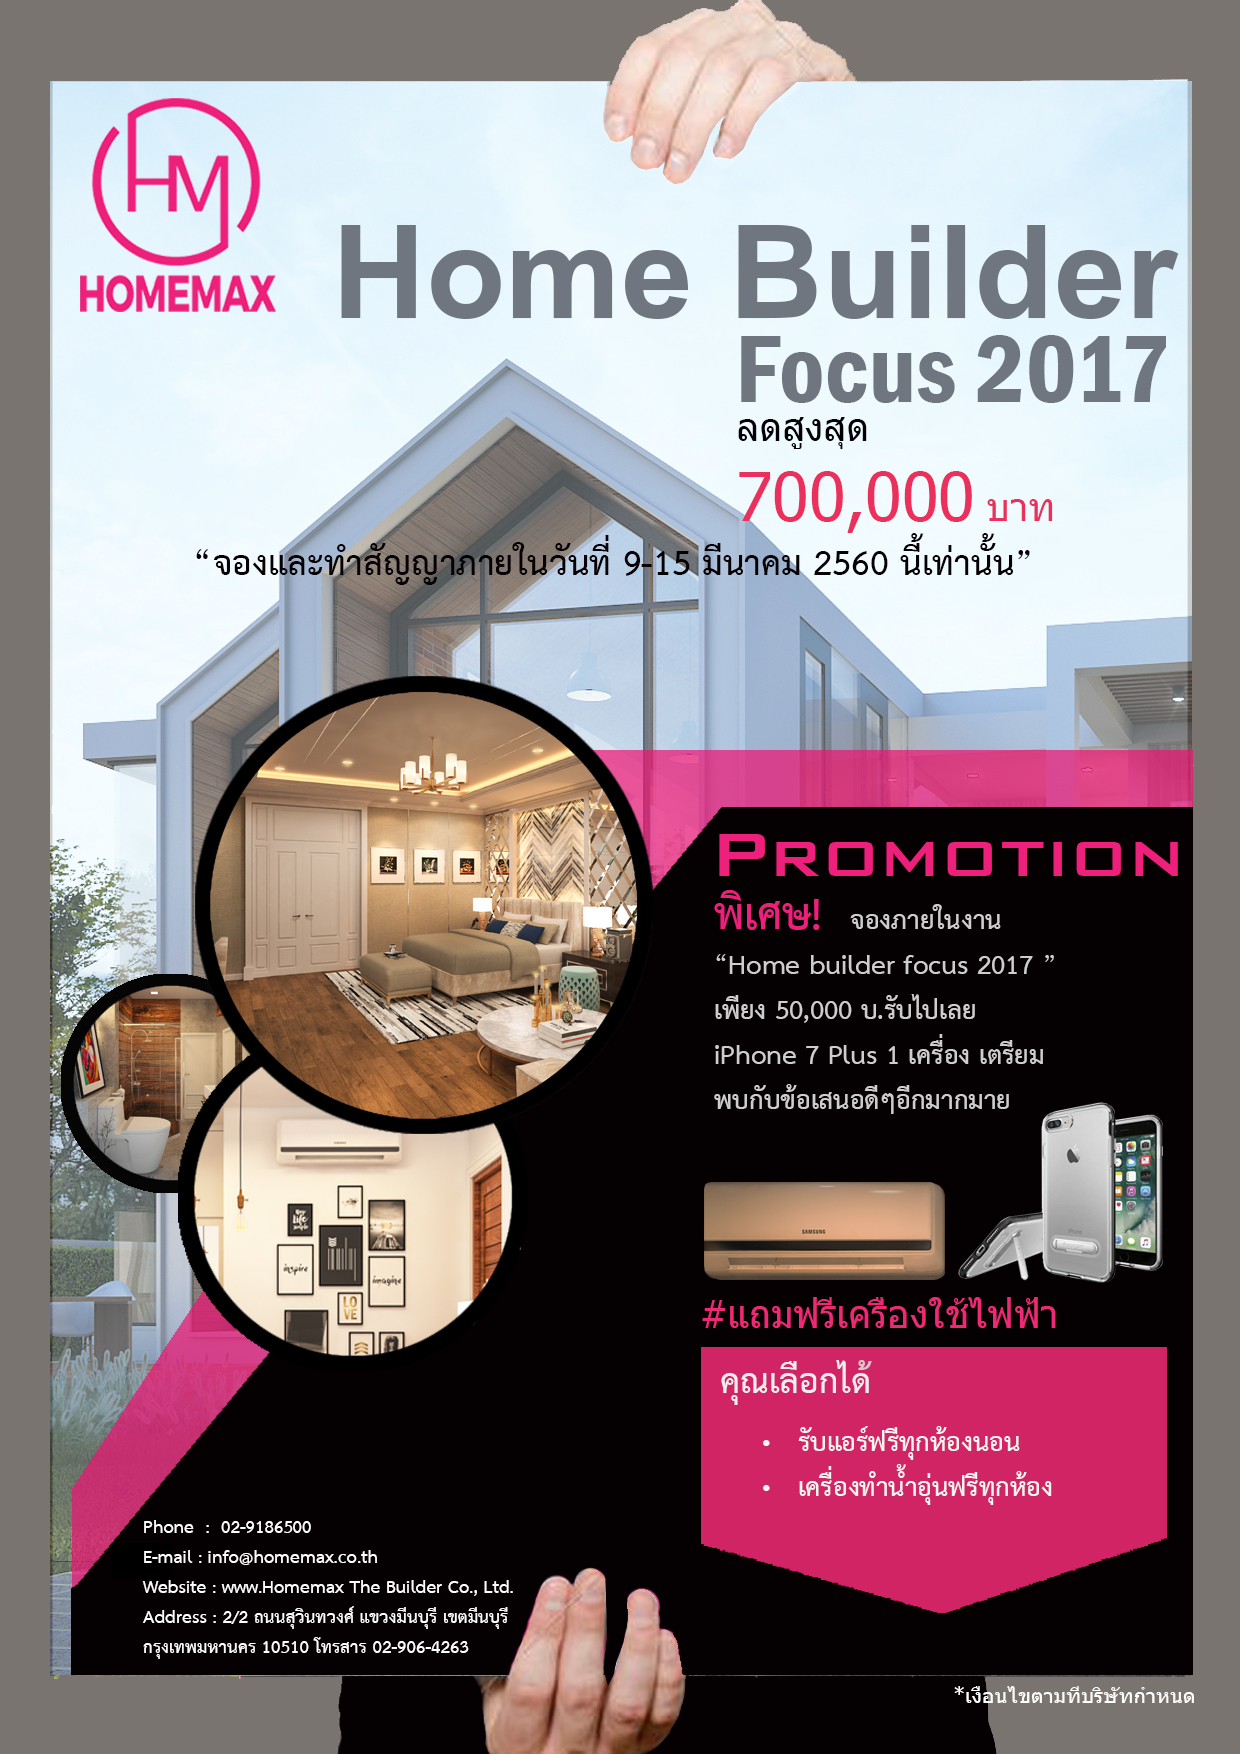 Home Builder Focus 2017 รับแอร์ฟรีทุกห้องนอน เครื่องทำน้ำอุ่นฟรีทุกห้อง